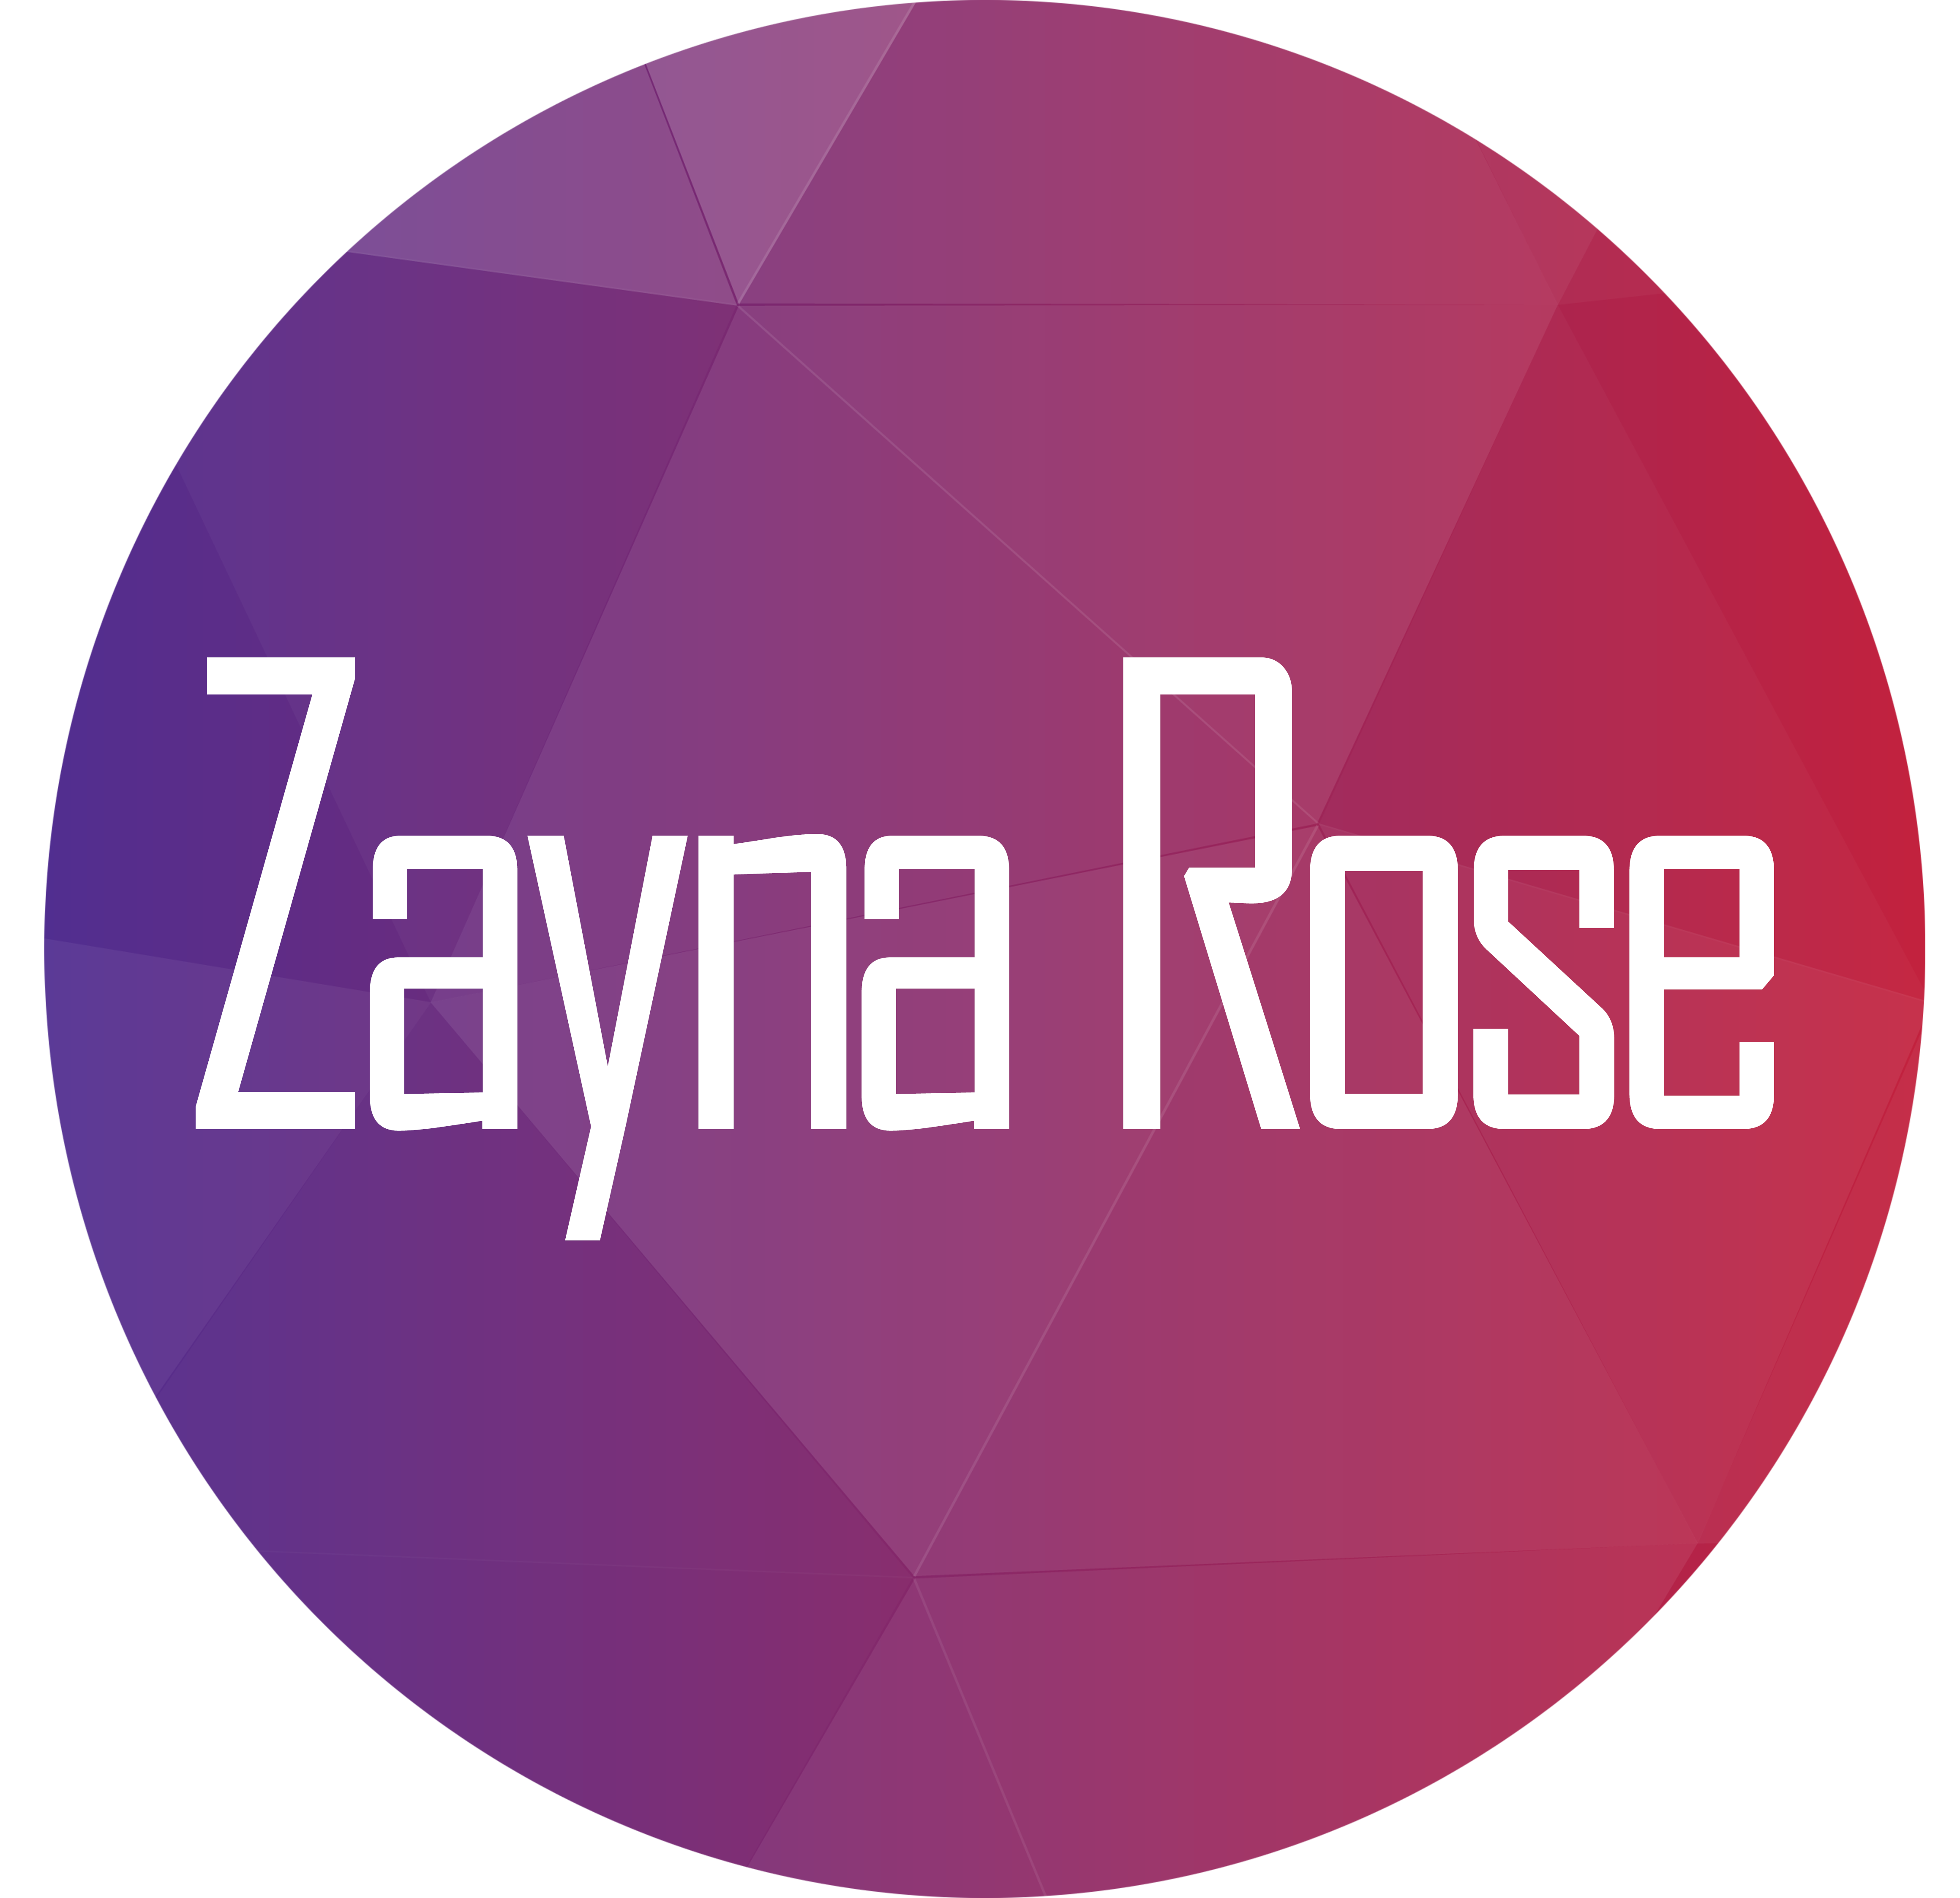 Zayna Rose  logo